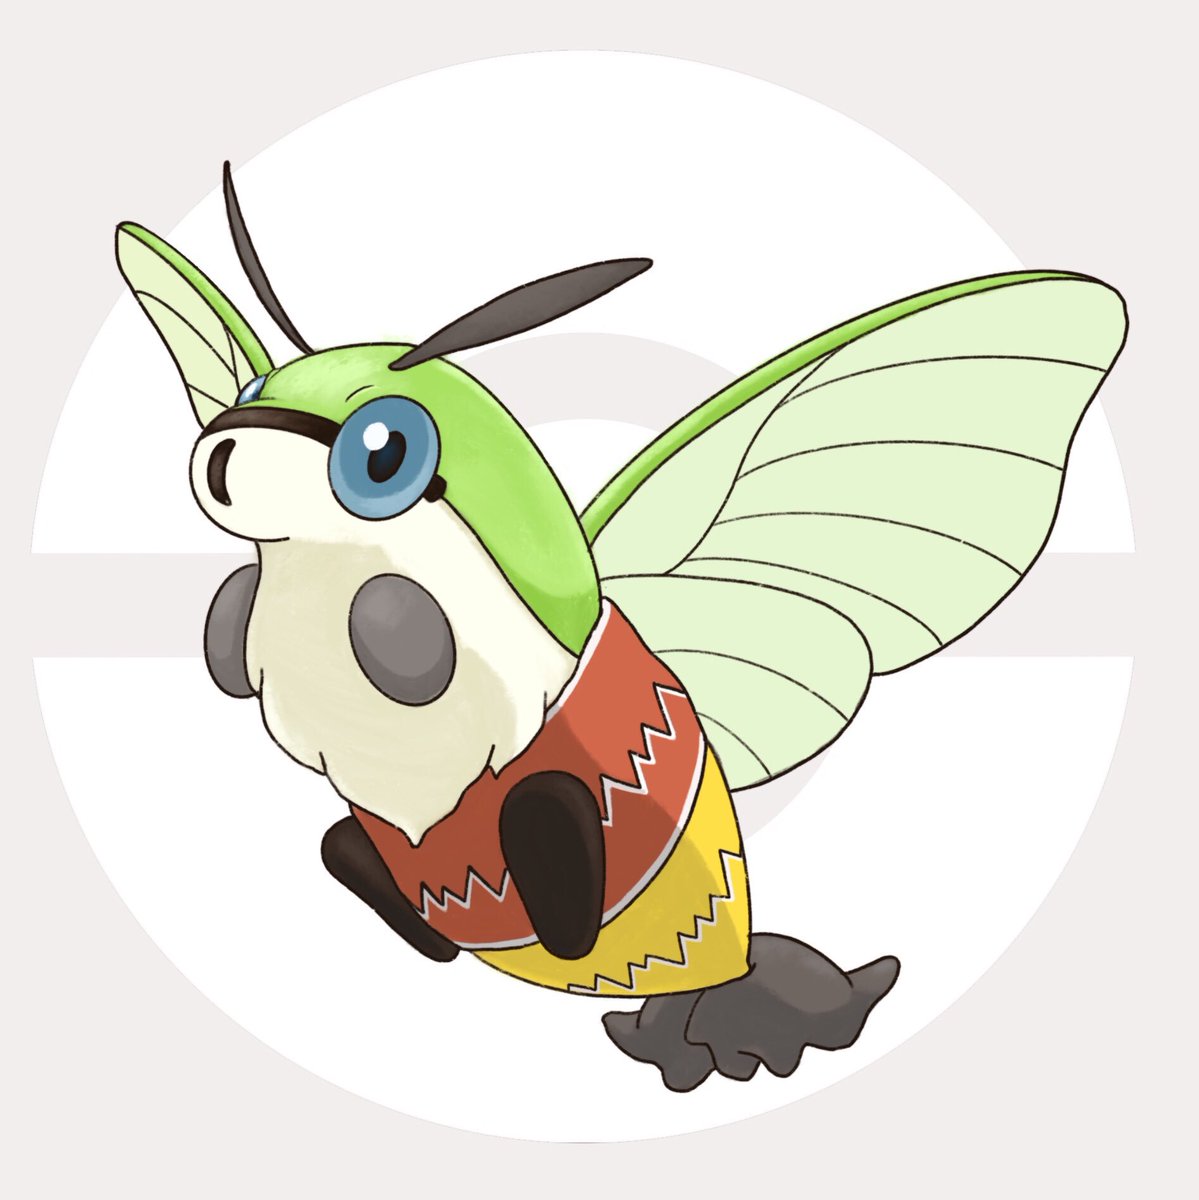 ほげほげぴーなつ No Twitter オオスカシバというモフモフの蛾がポケモンみたいでかわいいからポケモンにしてみた